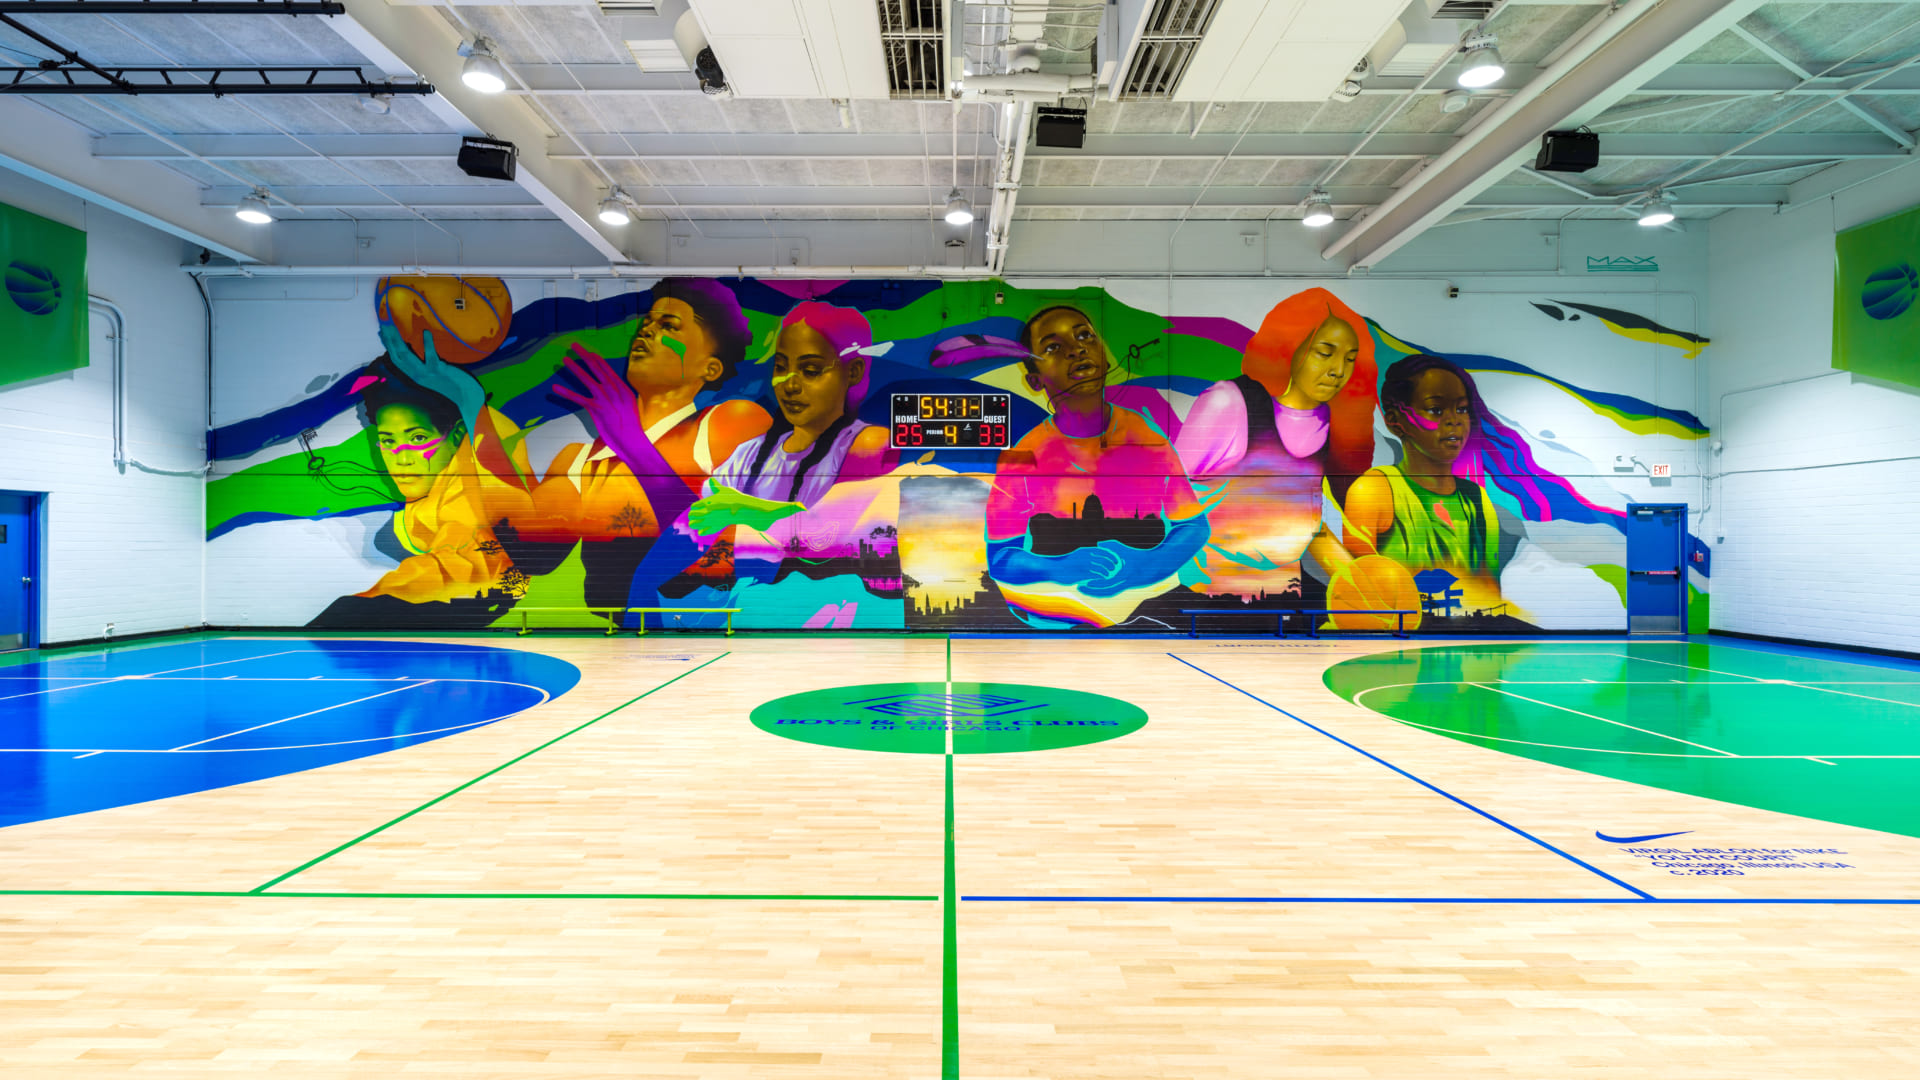 ナイキがヴァージル アブローらとリノベーションした 子供たちのためのバスケットボール施設 Webマガジン Axis デザインのwebメディア